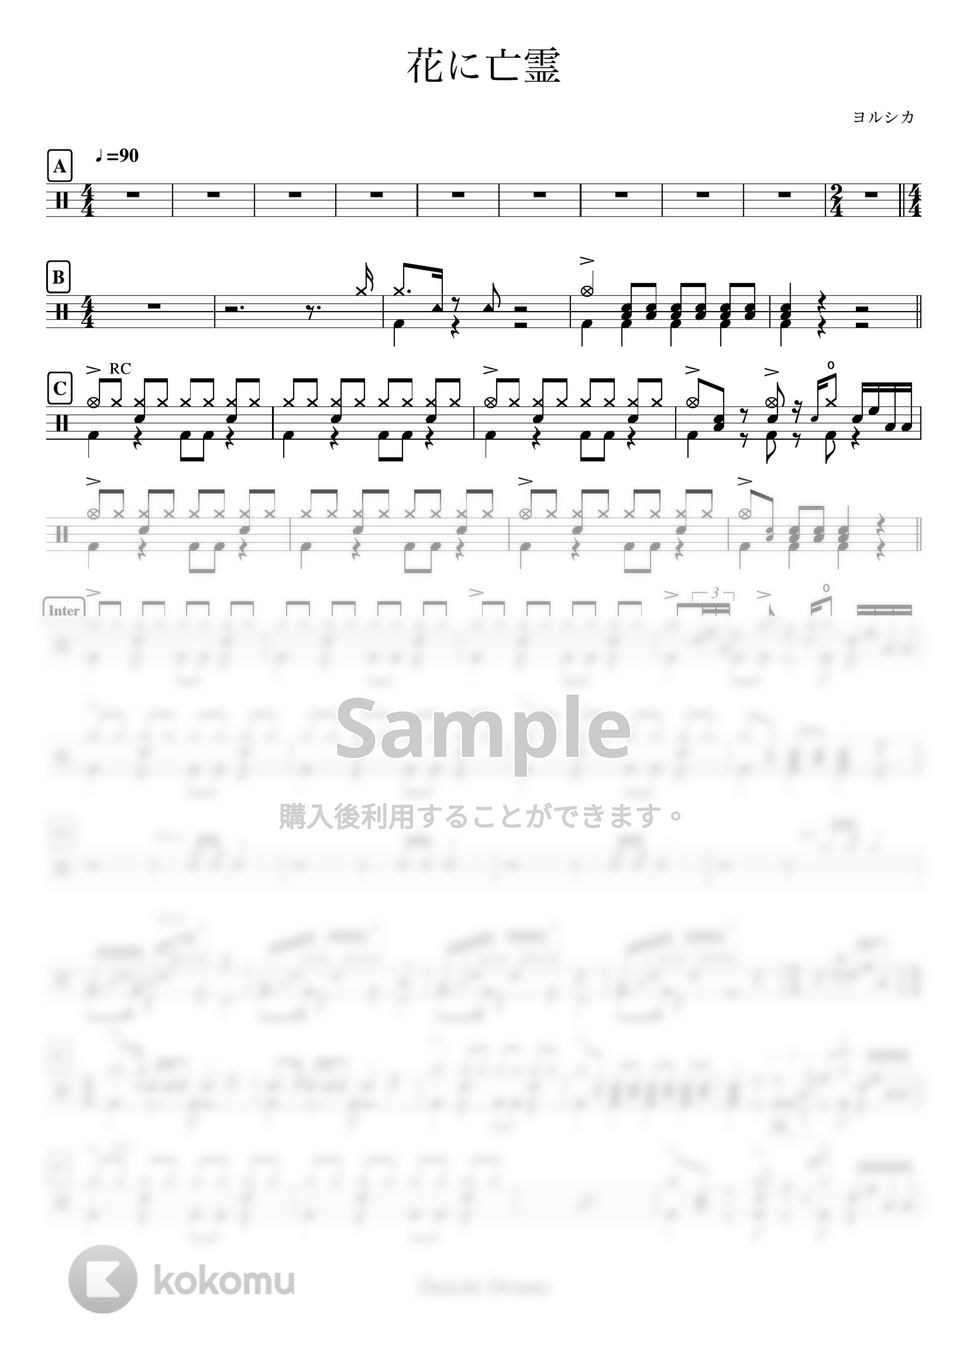 ヨルシカ - 花に亡霊 by Daichi Drums